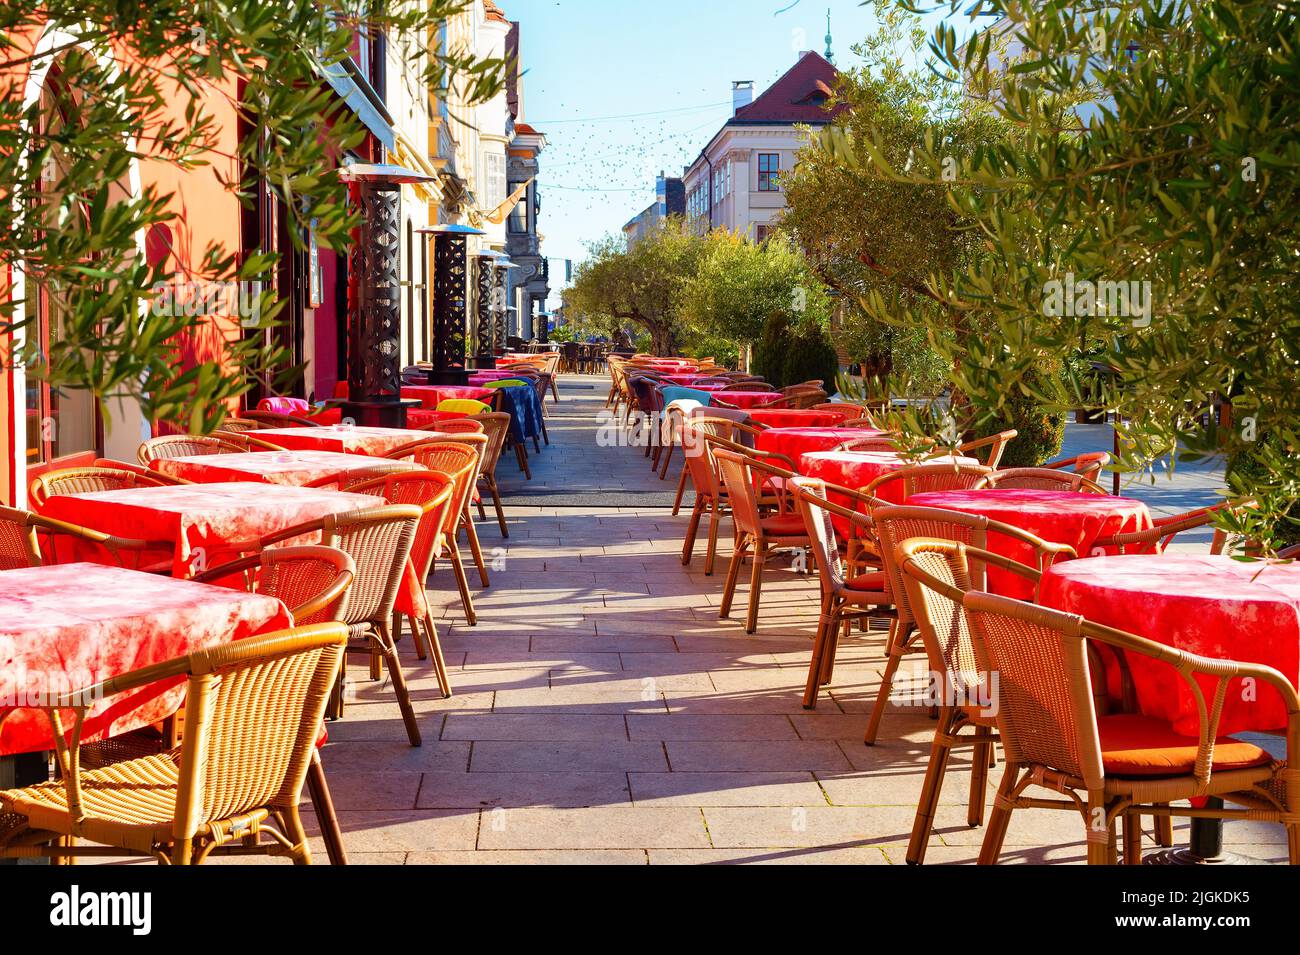 Mesas con telas rojas en la terraza exterior del restaurante en la calle turística, Gyor, Hungría Foto de stock